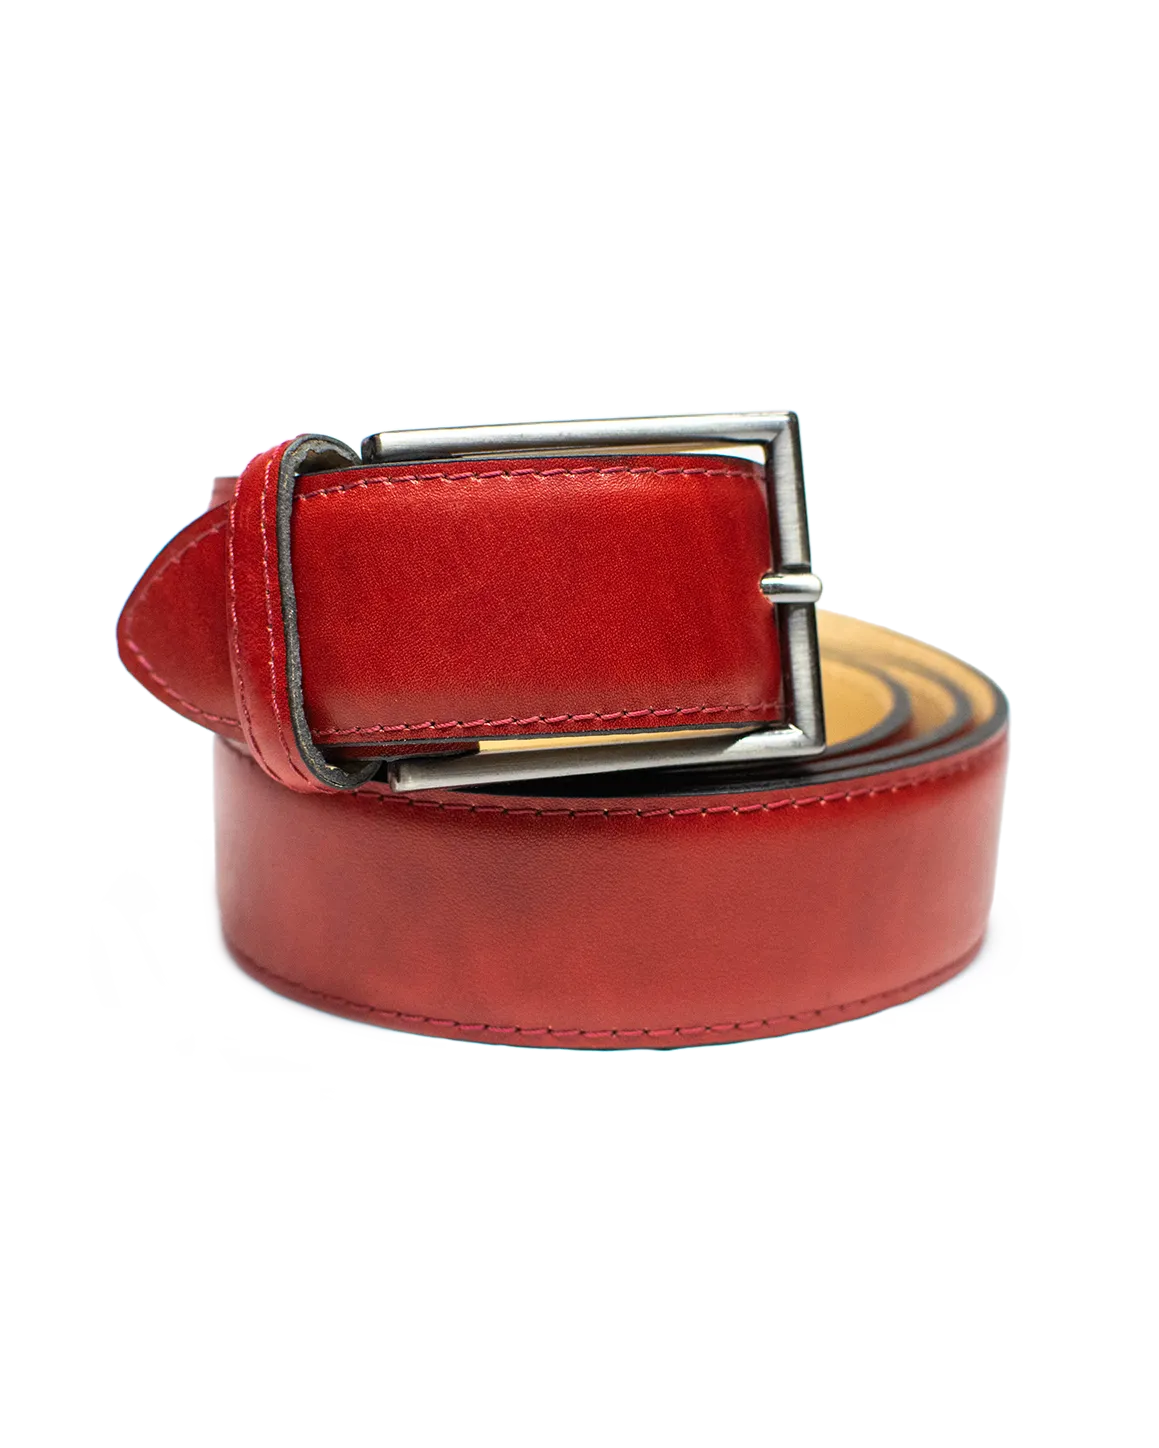 Cinturón clásico en color rojo